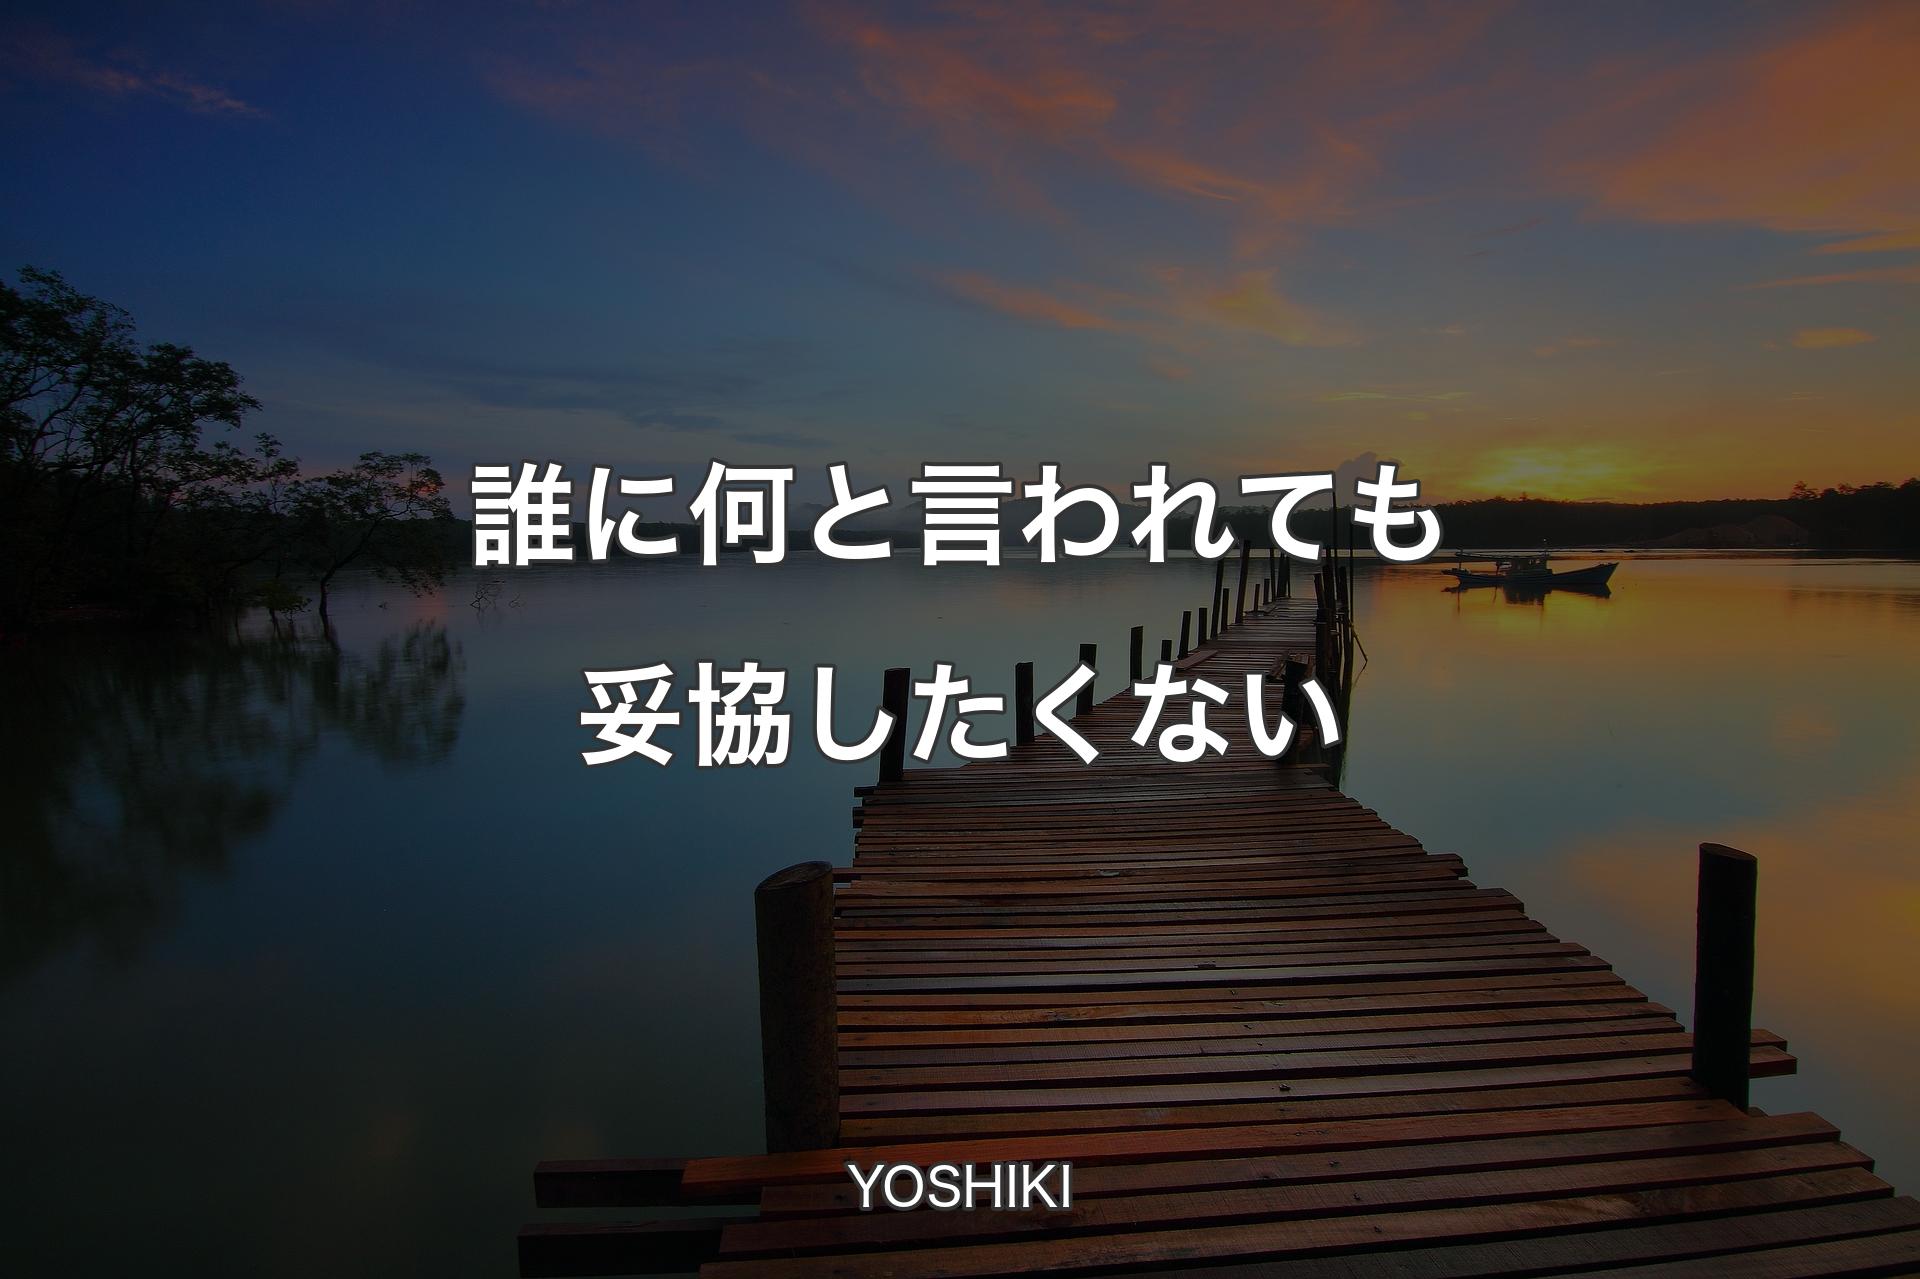 【背景3】誰に何と言われても妥協したくない - YOSHIKI